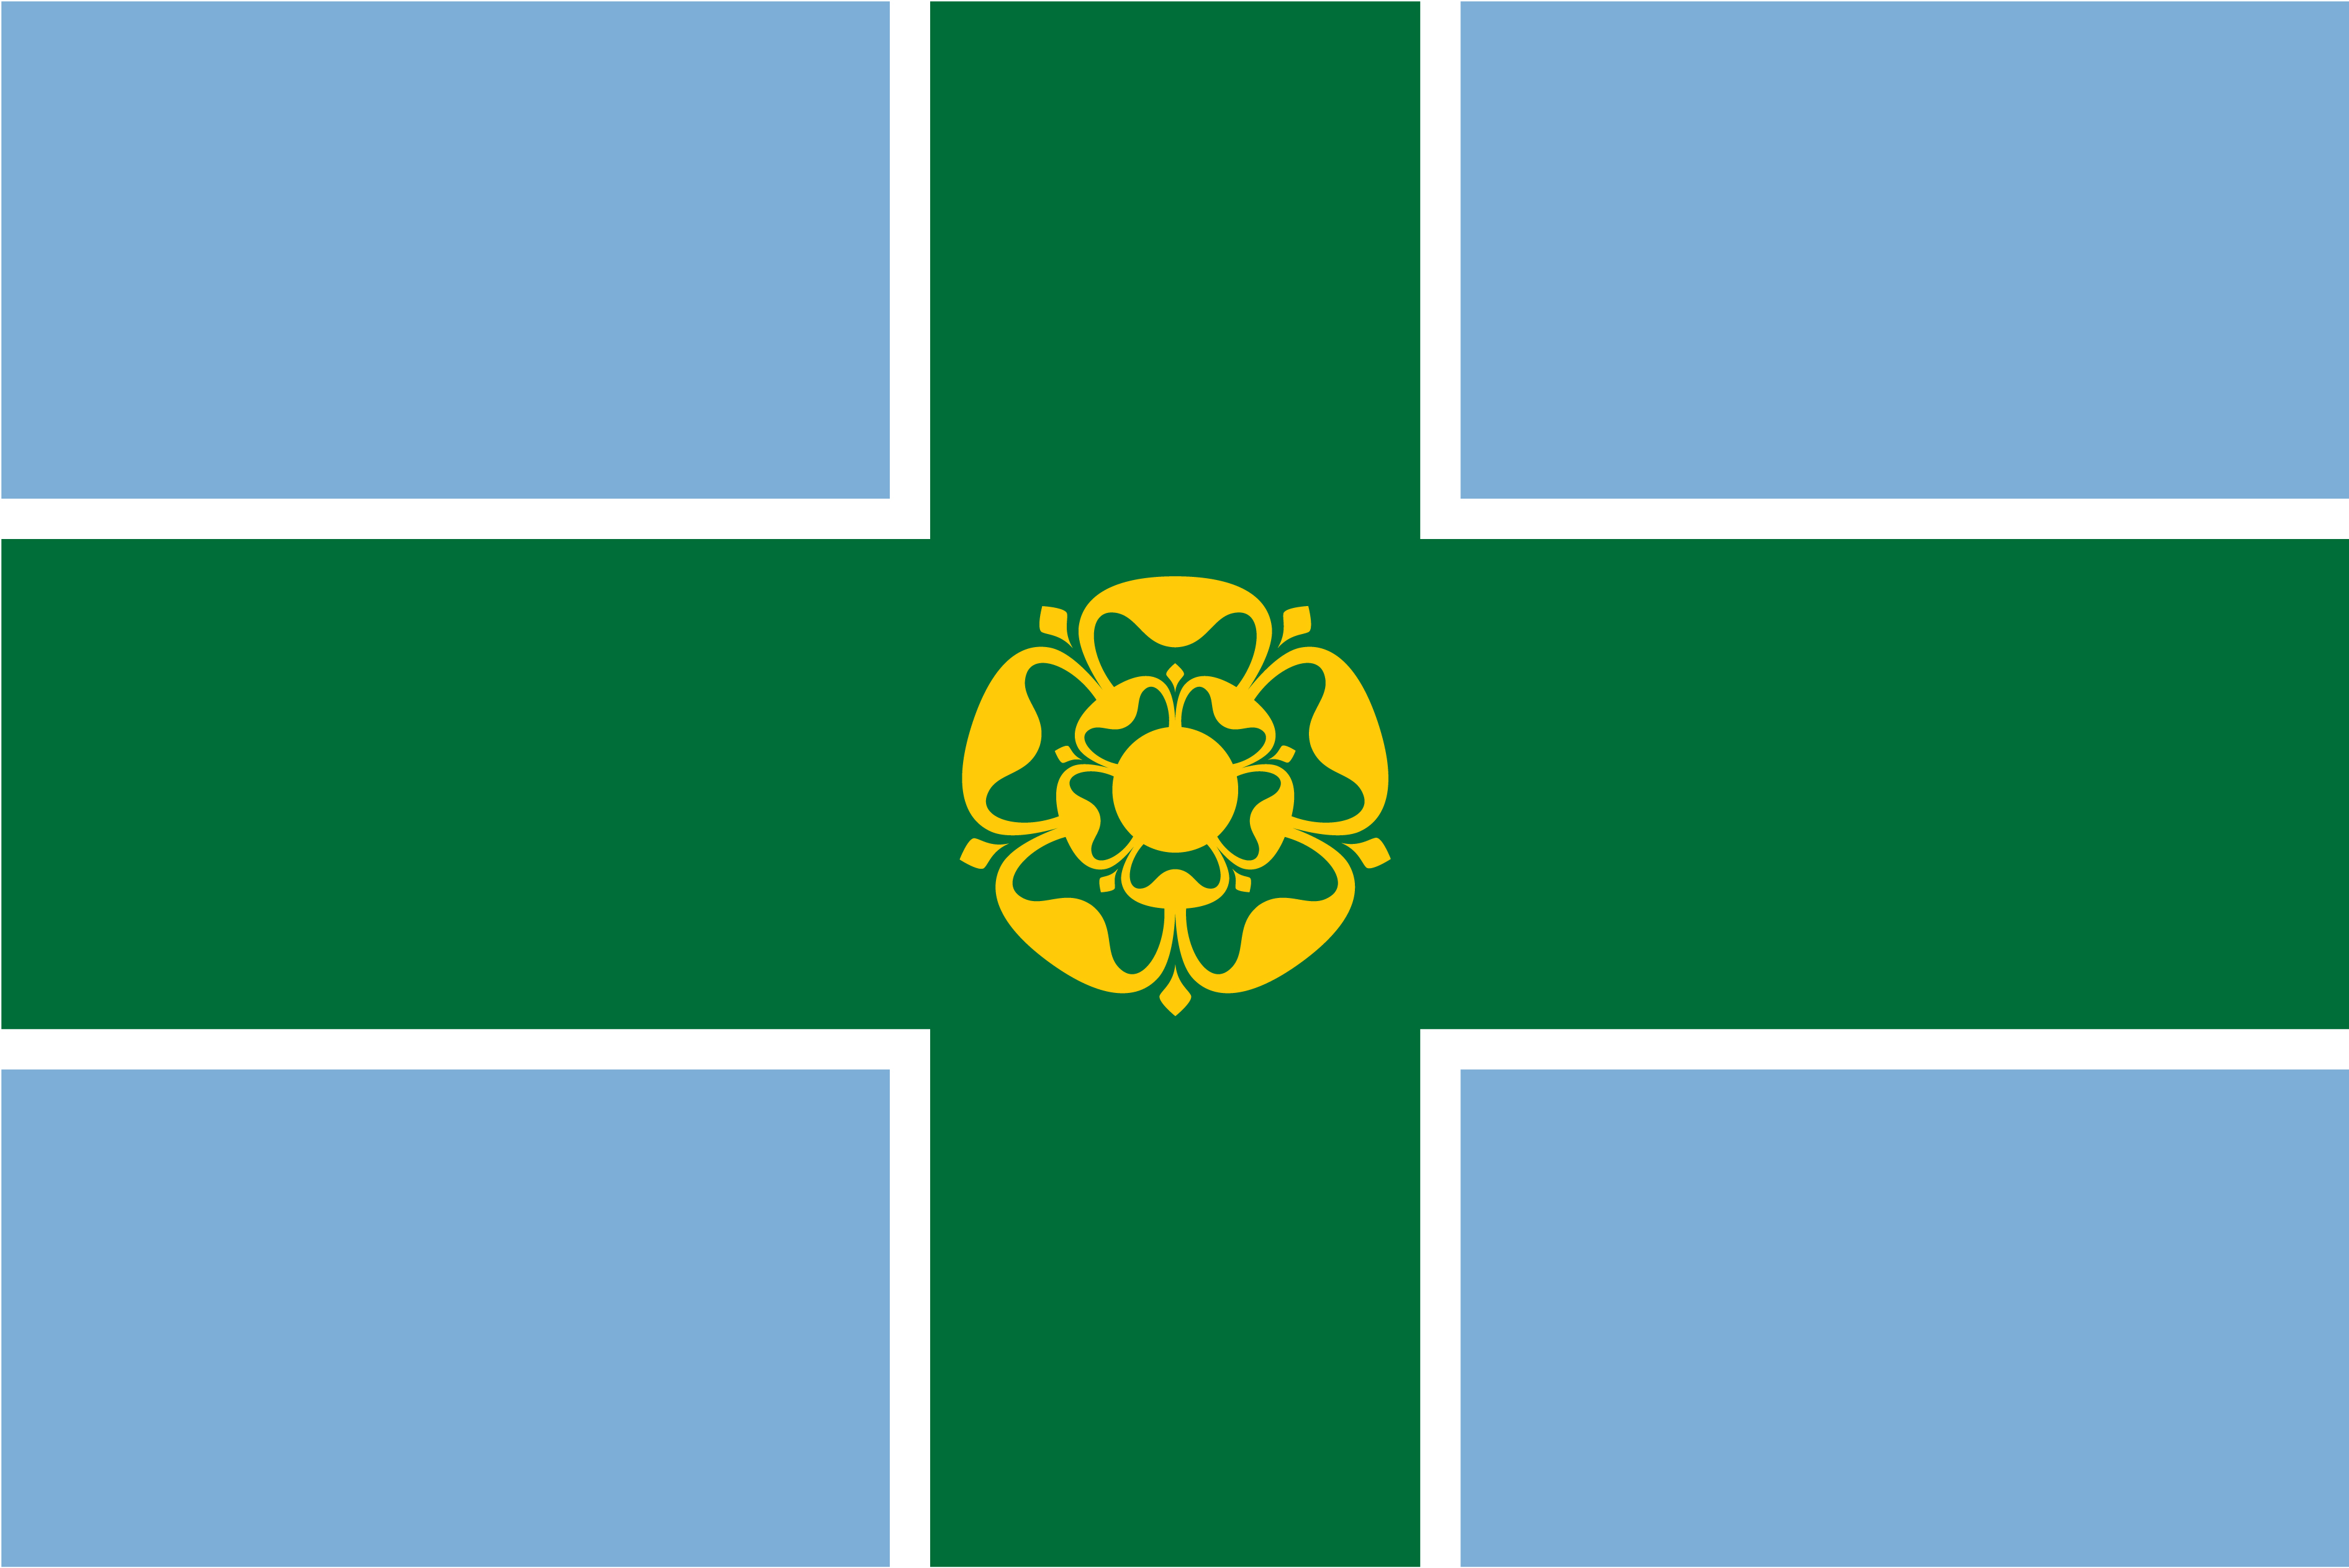 derbyshire_flag_full_size.jpg